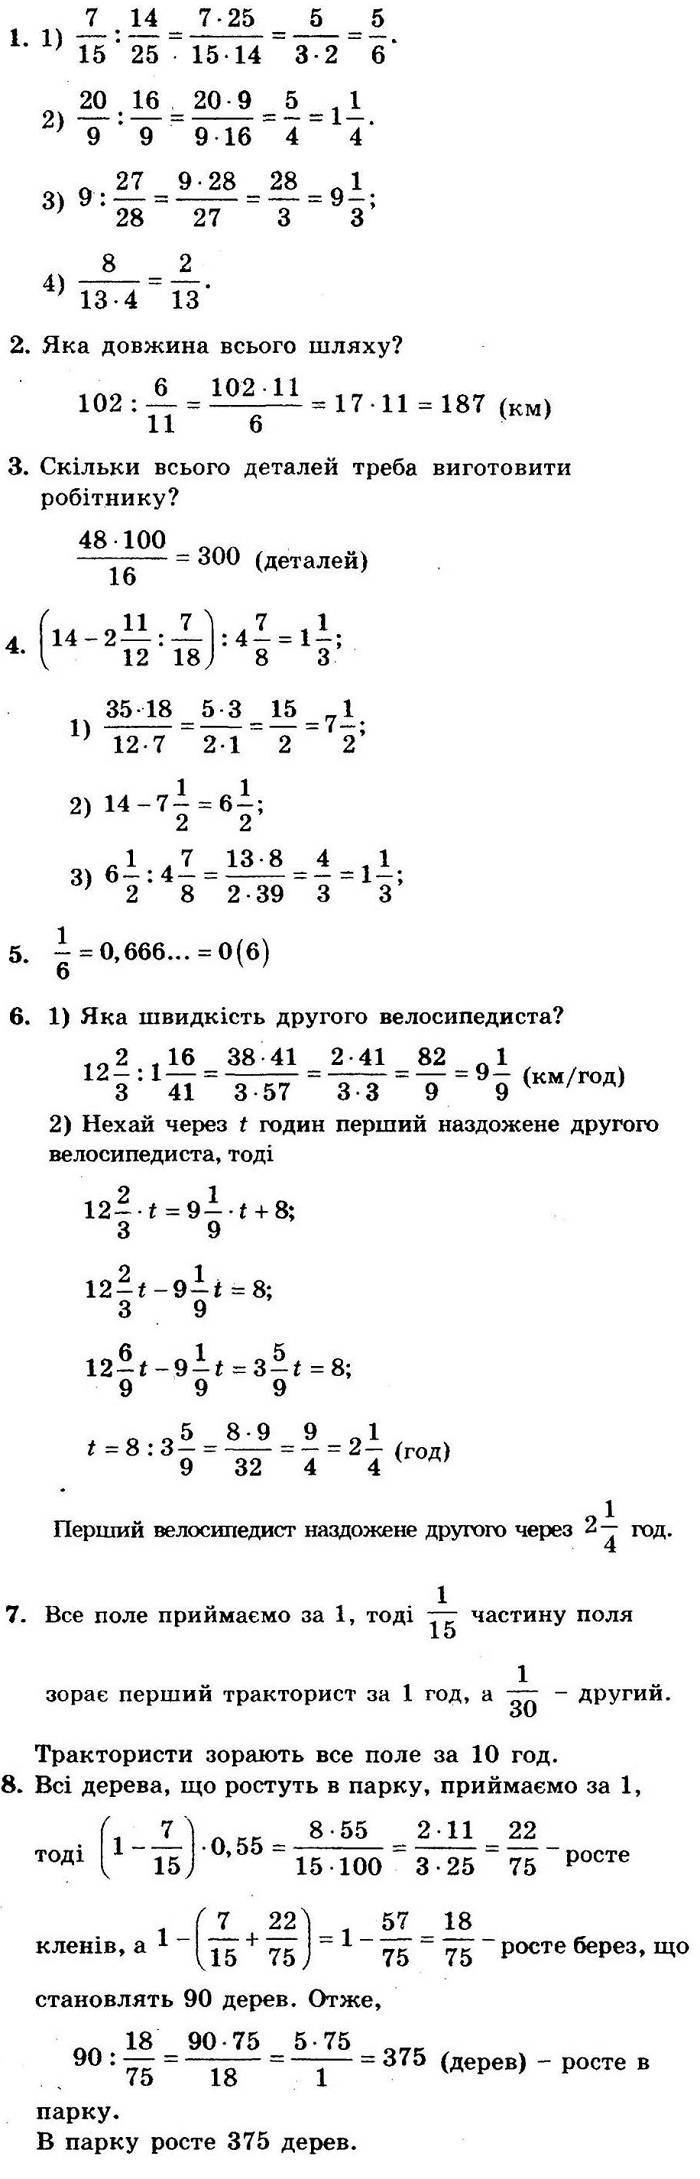 Розв’язання контрольної роботи 4, варіант 1 до посібника 6 клас Математика Мерзляк (збірник задач і контрольних робіт)